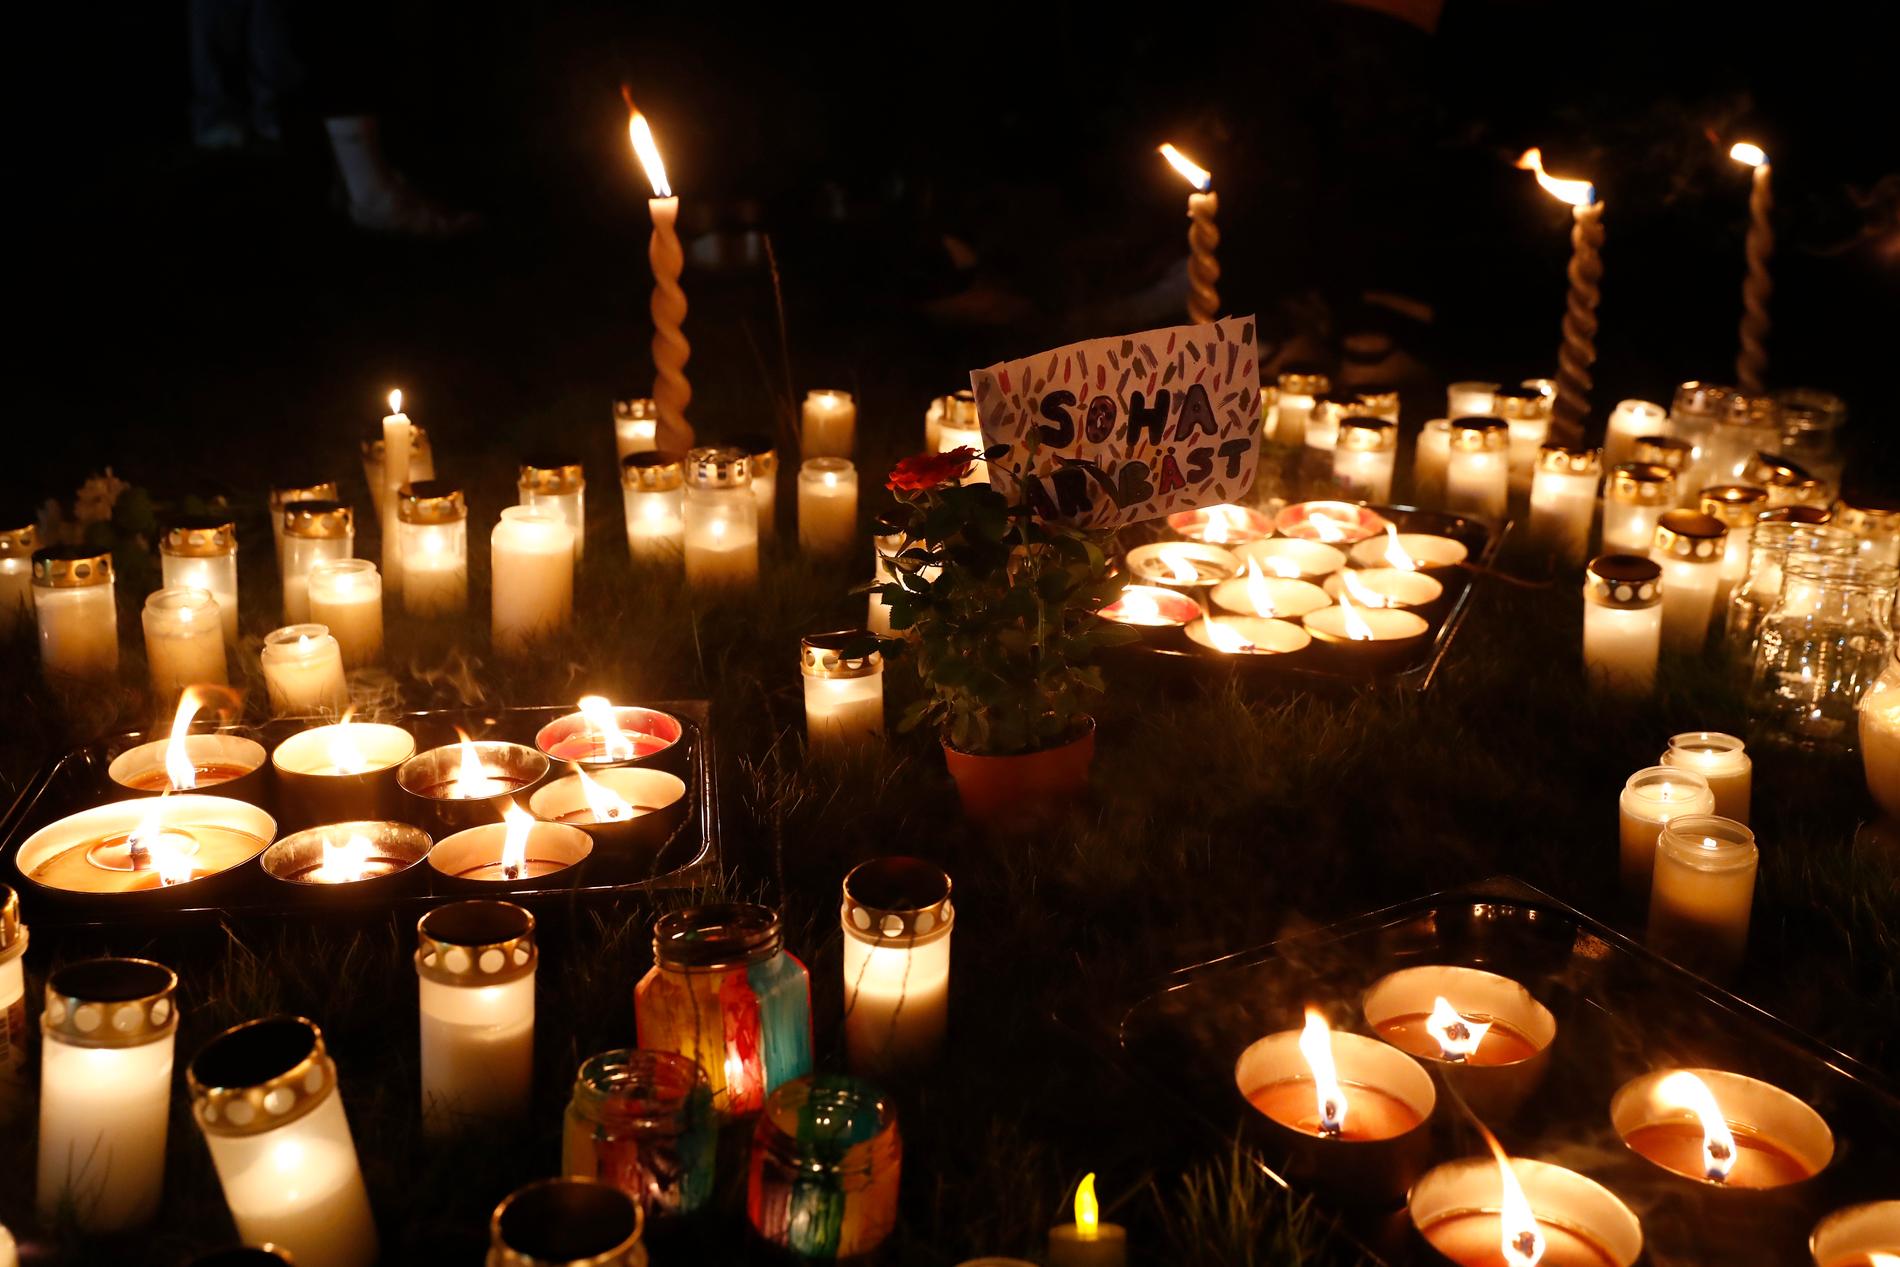 En ljusmanifestation hölls i Fullerö Hage, Storvreta, norr om Uppsala den 1 oktober med anledning av sprängdådet den 28 september då en kvinna dödades.